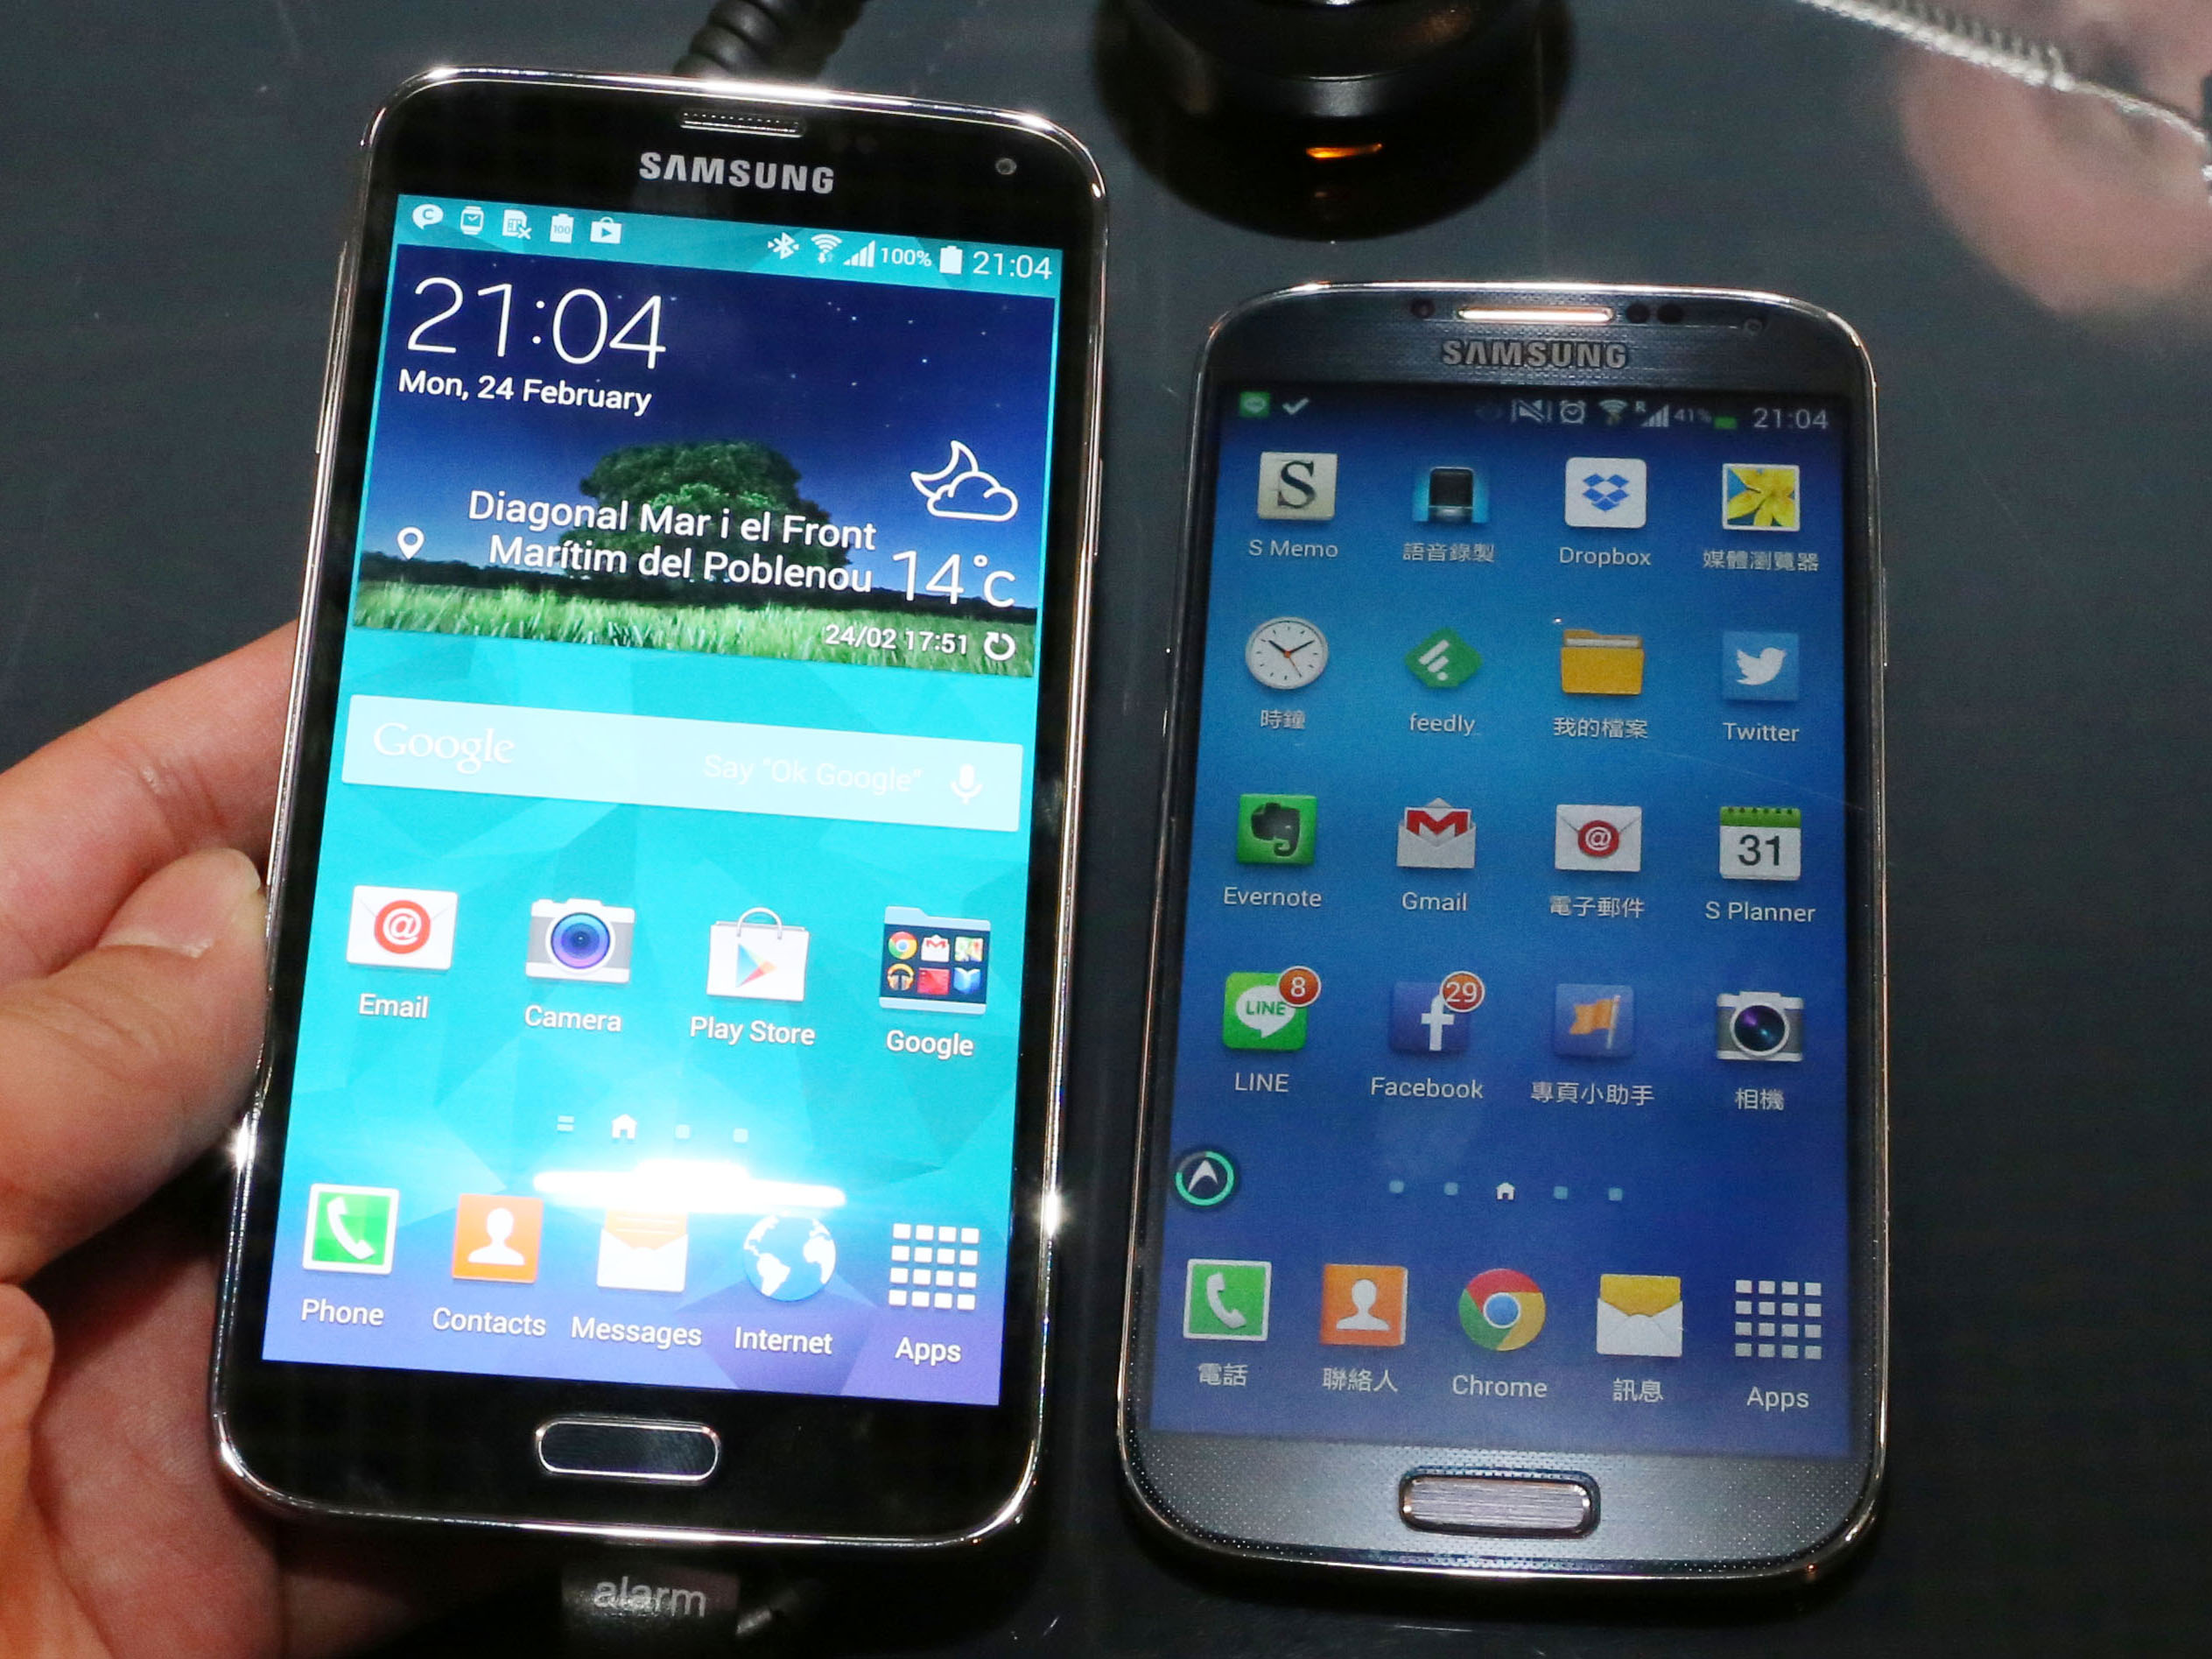 防水、指紋辨識、4G、心跳偵測全都有， Samsung Galaxy S5 搶先體驗